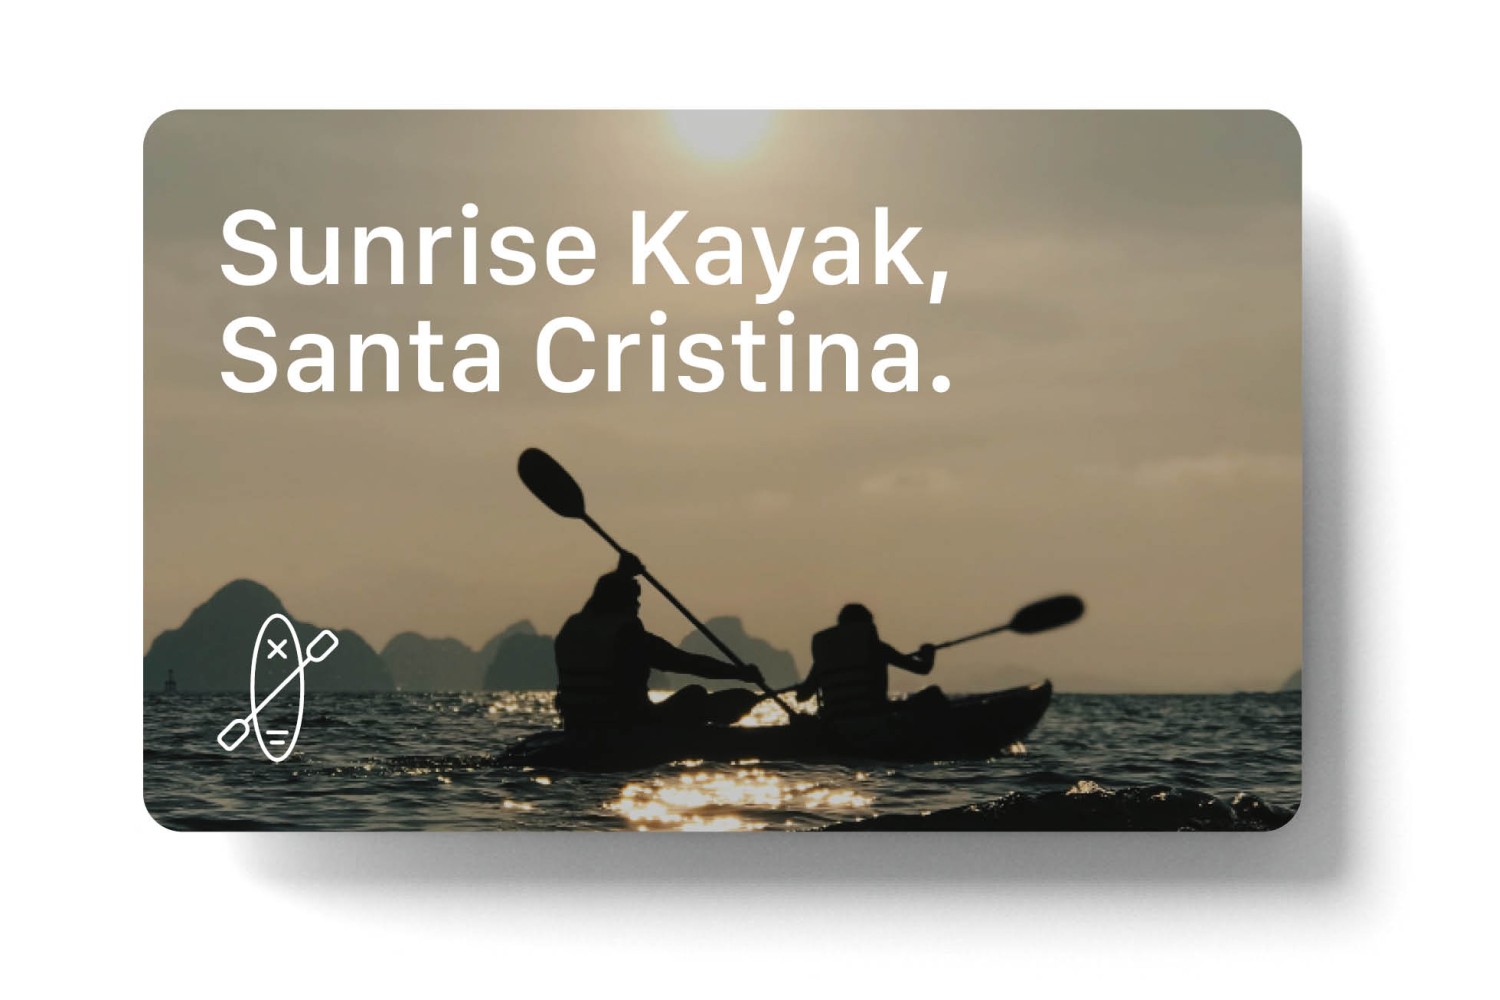 Kayak trip along the beaches surrounding Santa Cristina d'Aro